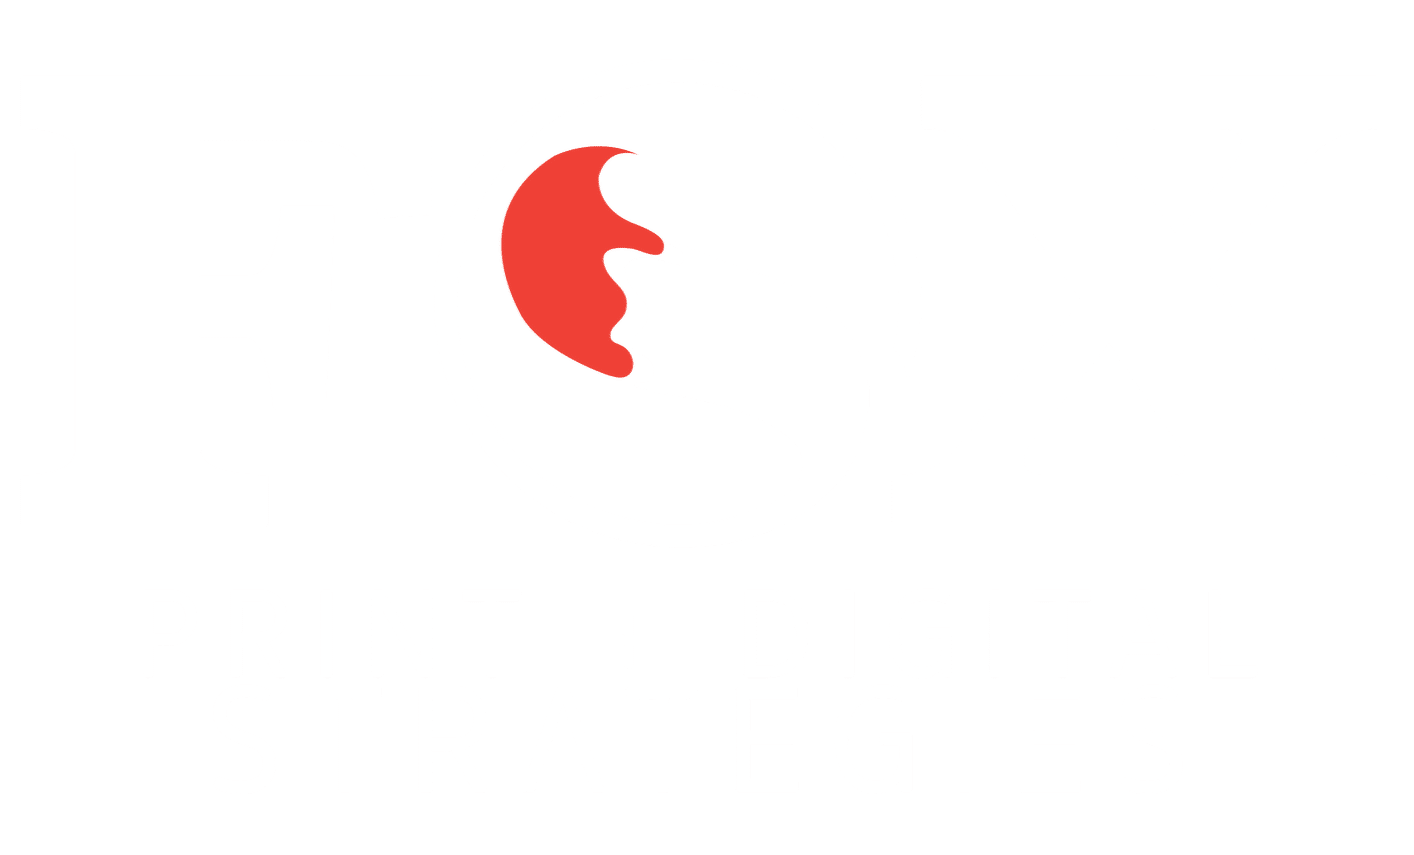 Fox print + digital strategies logo